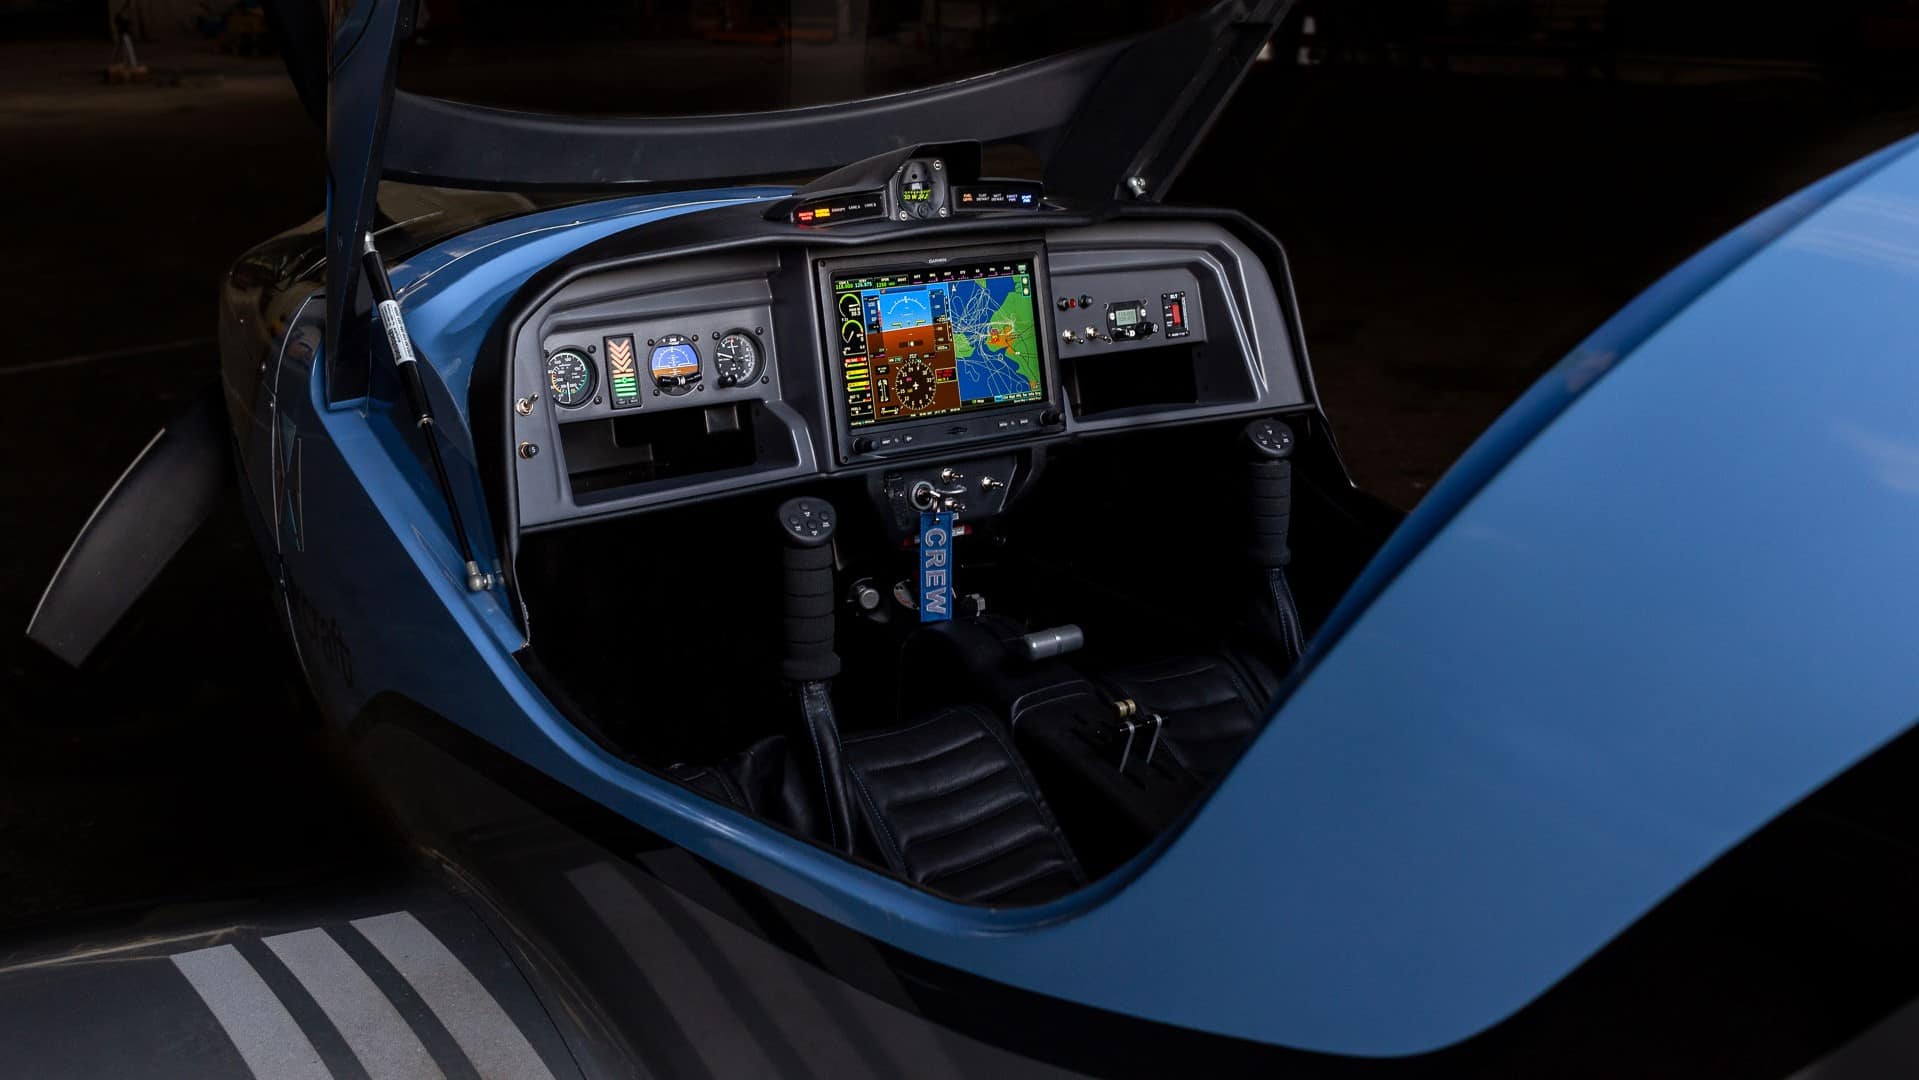 Le glass cockpit gravitant autour du Garmin G3X vous assure une simplicité d'utilisation jamais vue. Le tout combiné avec un cockpit simplifié au maximum. Le système de démarrage facile vous évite les longues et complexes procédures de démarrage moteur. Tout se fait en tournant la clé, comme dans votre voiture.